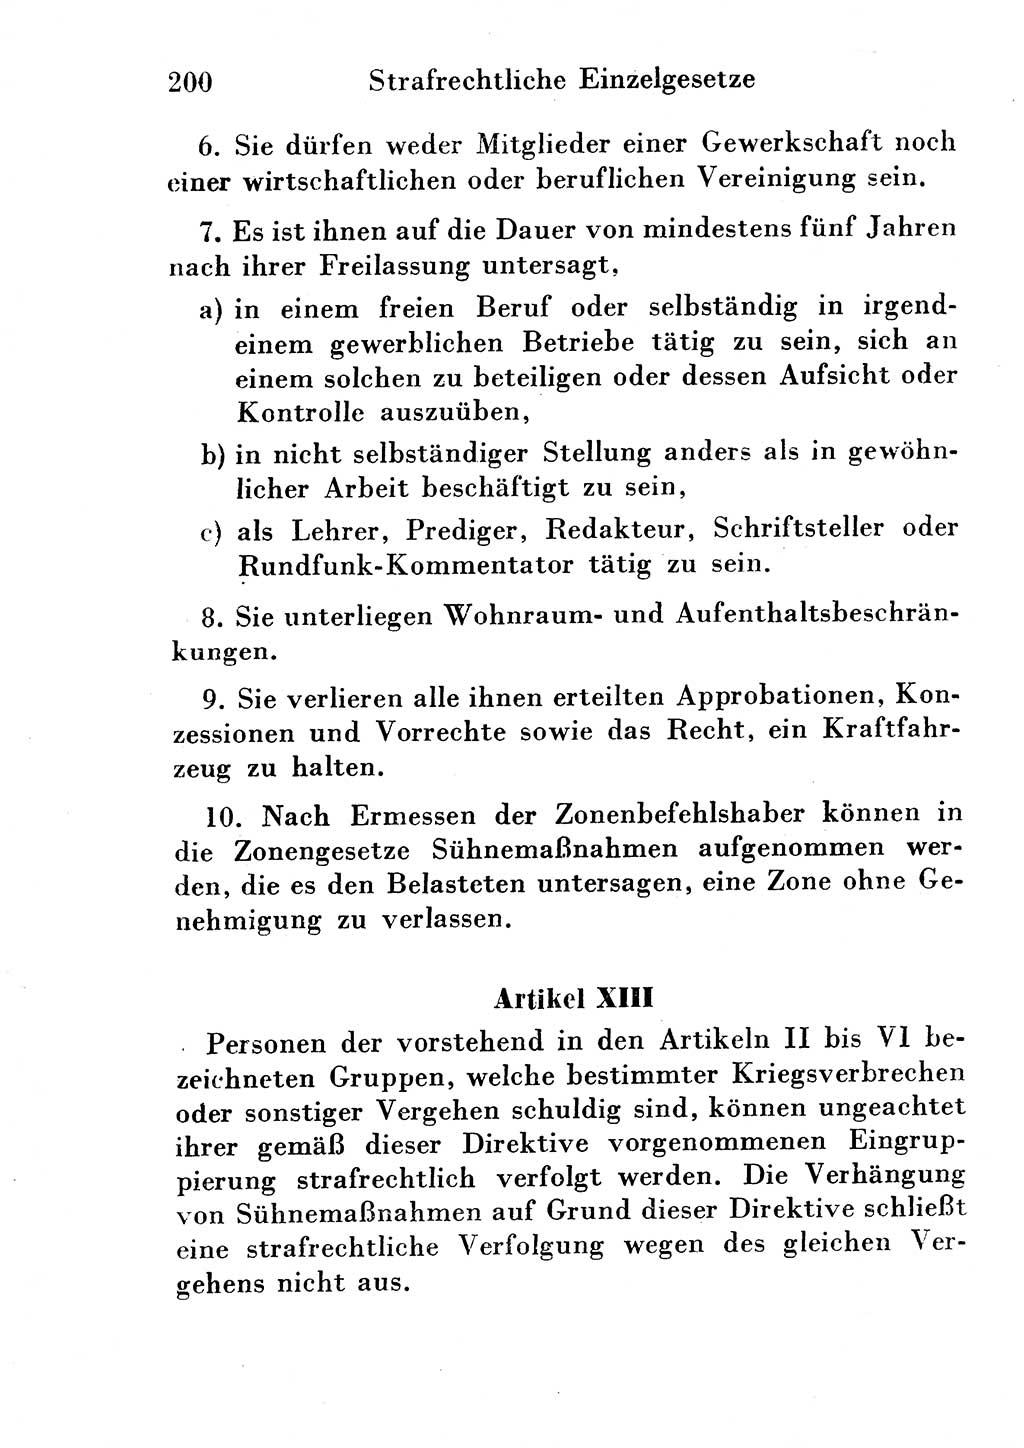 Strafgesetzbuch (StGB) und andere Strafgesetze [Deutsche Demokratische Republik (DDR)] 1954, Seite 200 (StGB Strafges. DDR 1954, S. 200)